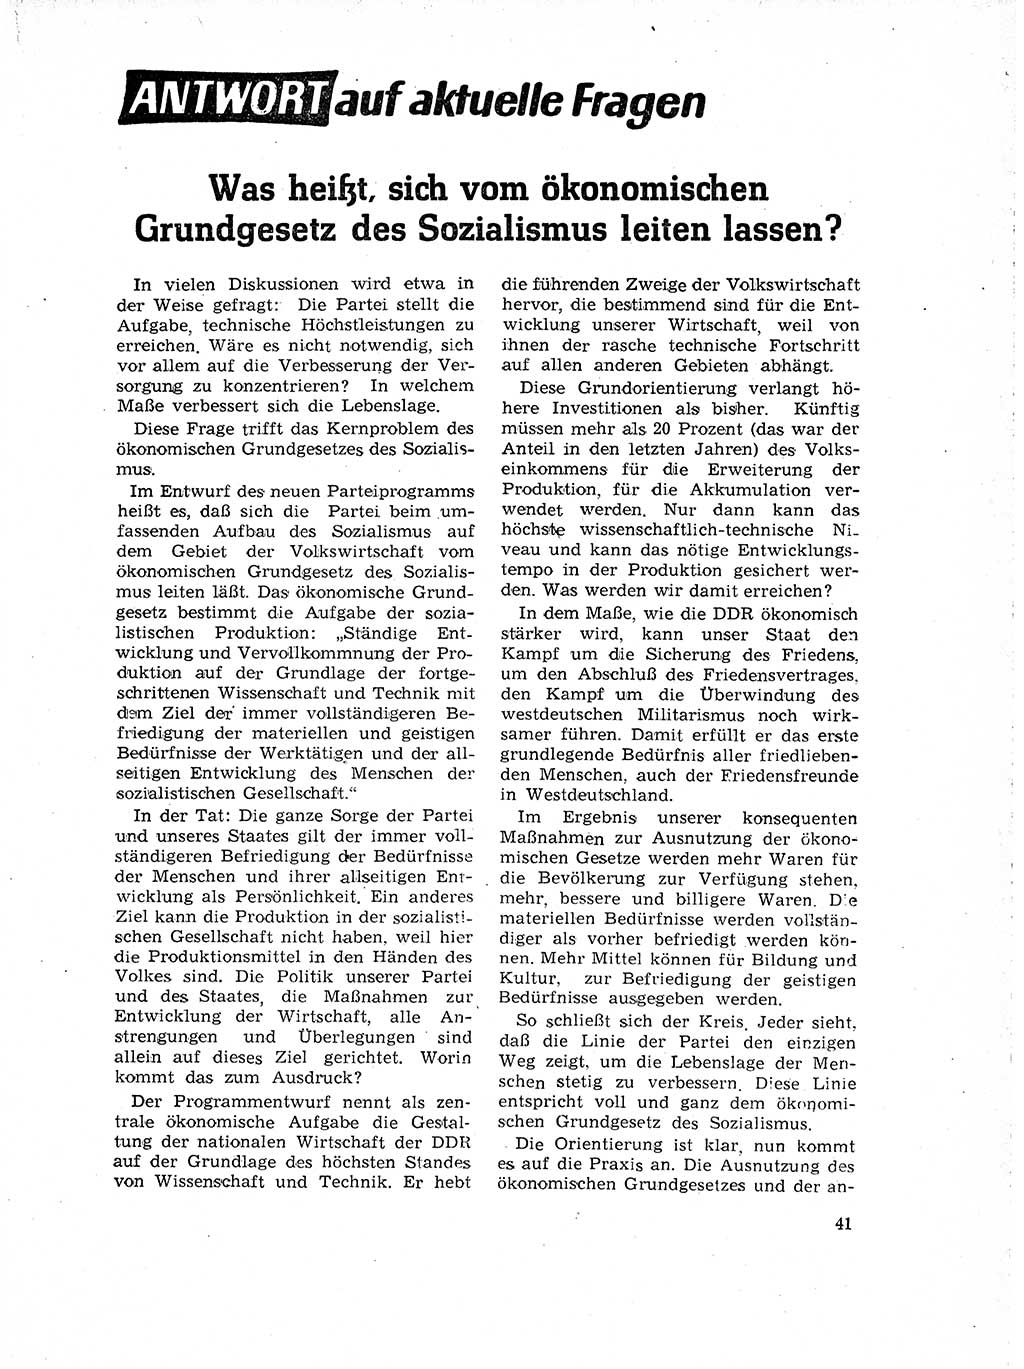 Neuer Weg (NW), Organ des Zentralkomitees (ZK) der SED (Sozialistische Einheitspartei Deutschlands) für Fragen des Parteilebens, 18. Jahrgang [Deutsche Demokratische Republik (DDR)] 1963, Seite 41 (NW ZK SED DDR 1963, S. 41)